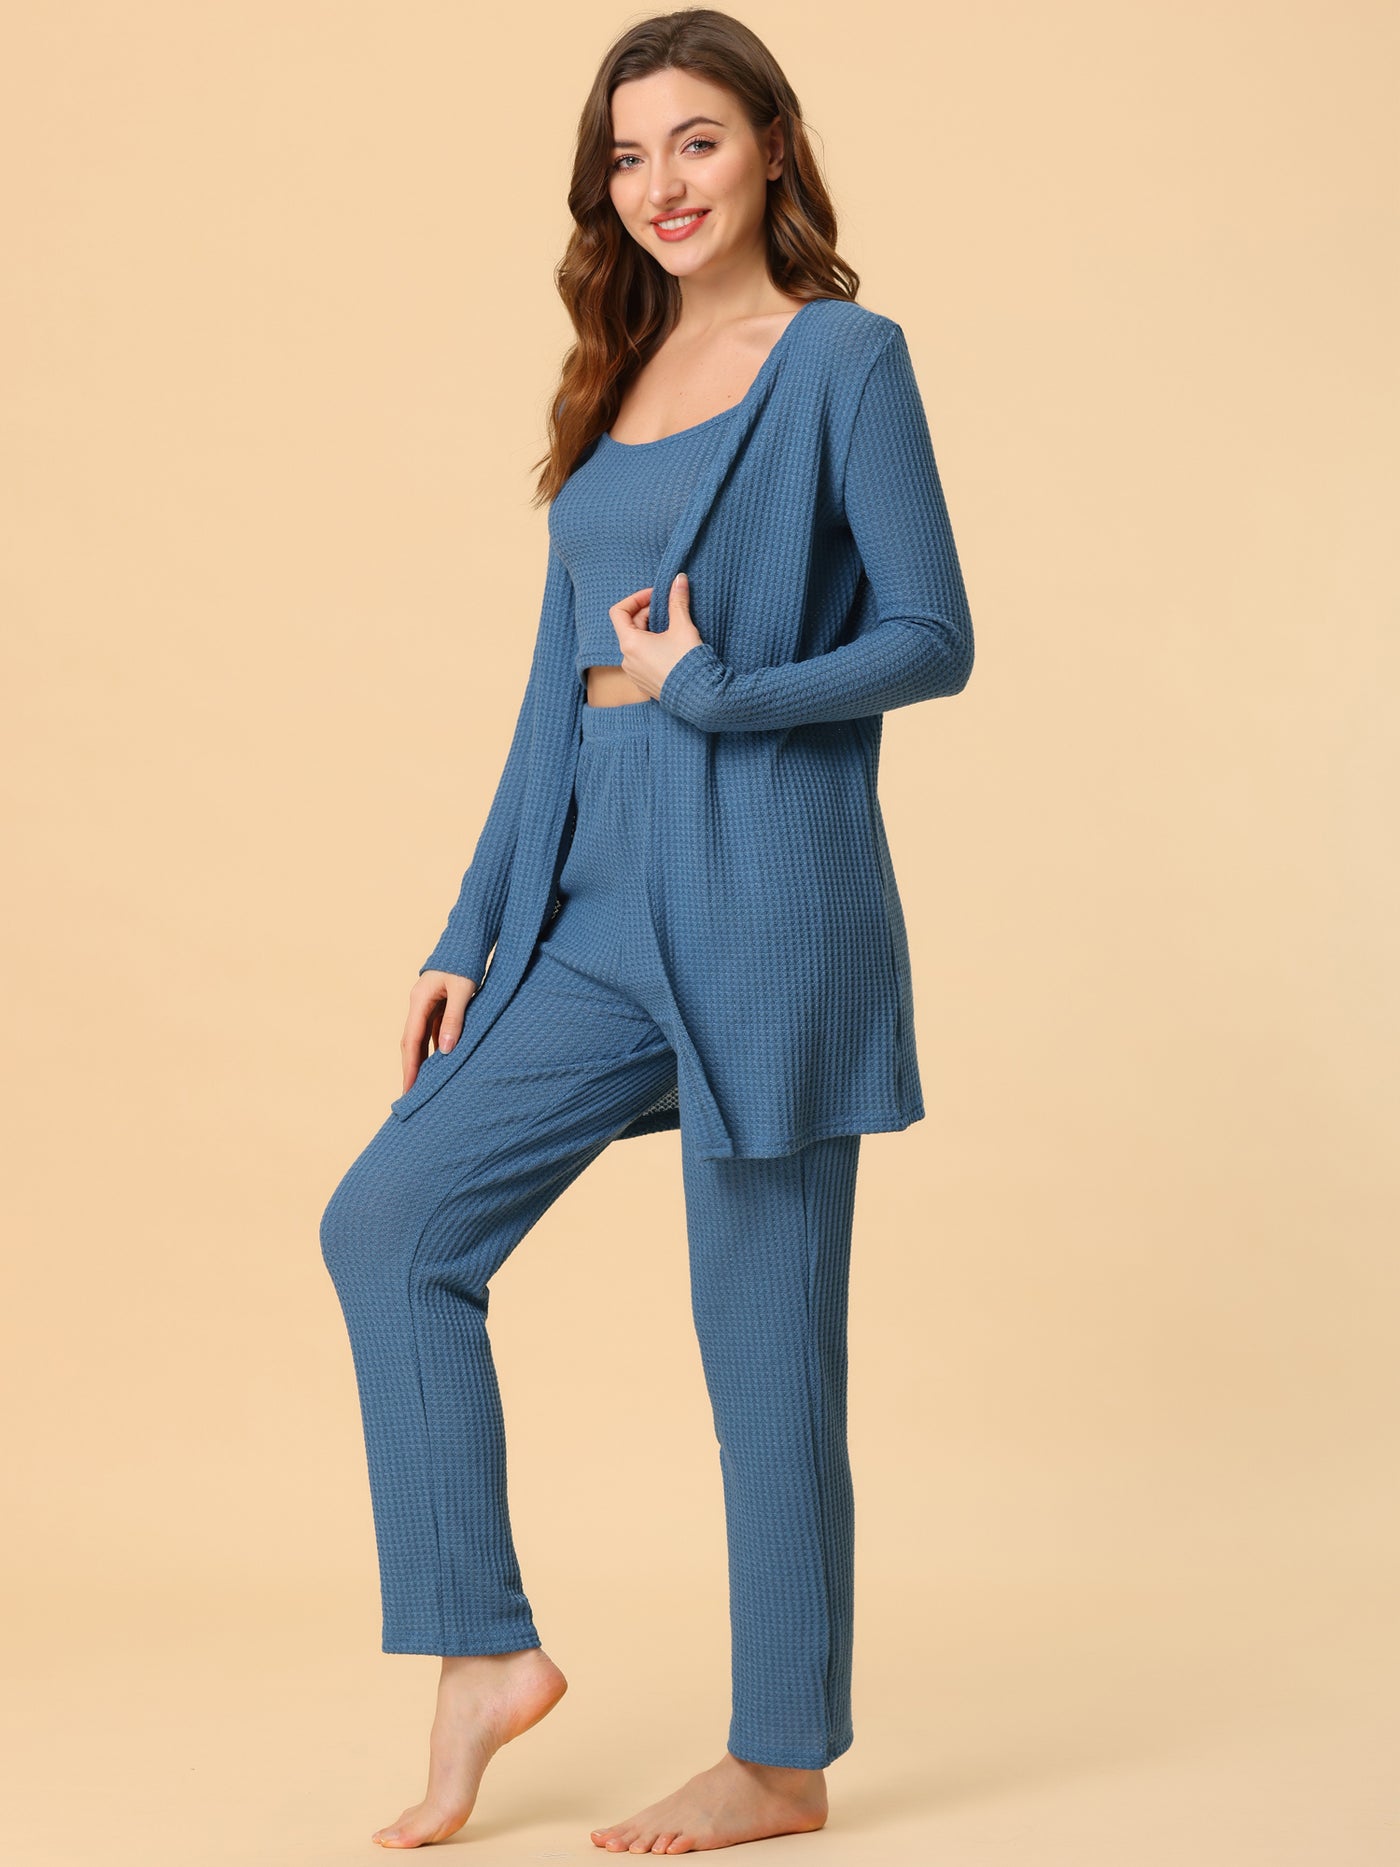 Bublédon Women's 3pcs Knit Lounge Sleepwear Pajama Sets